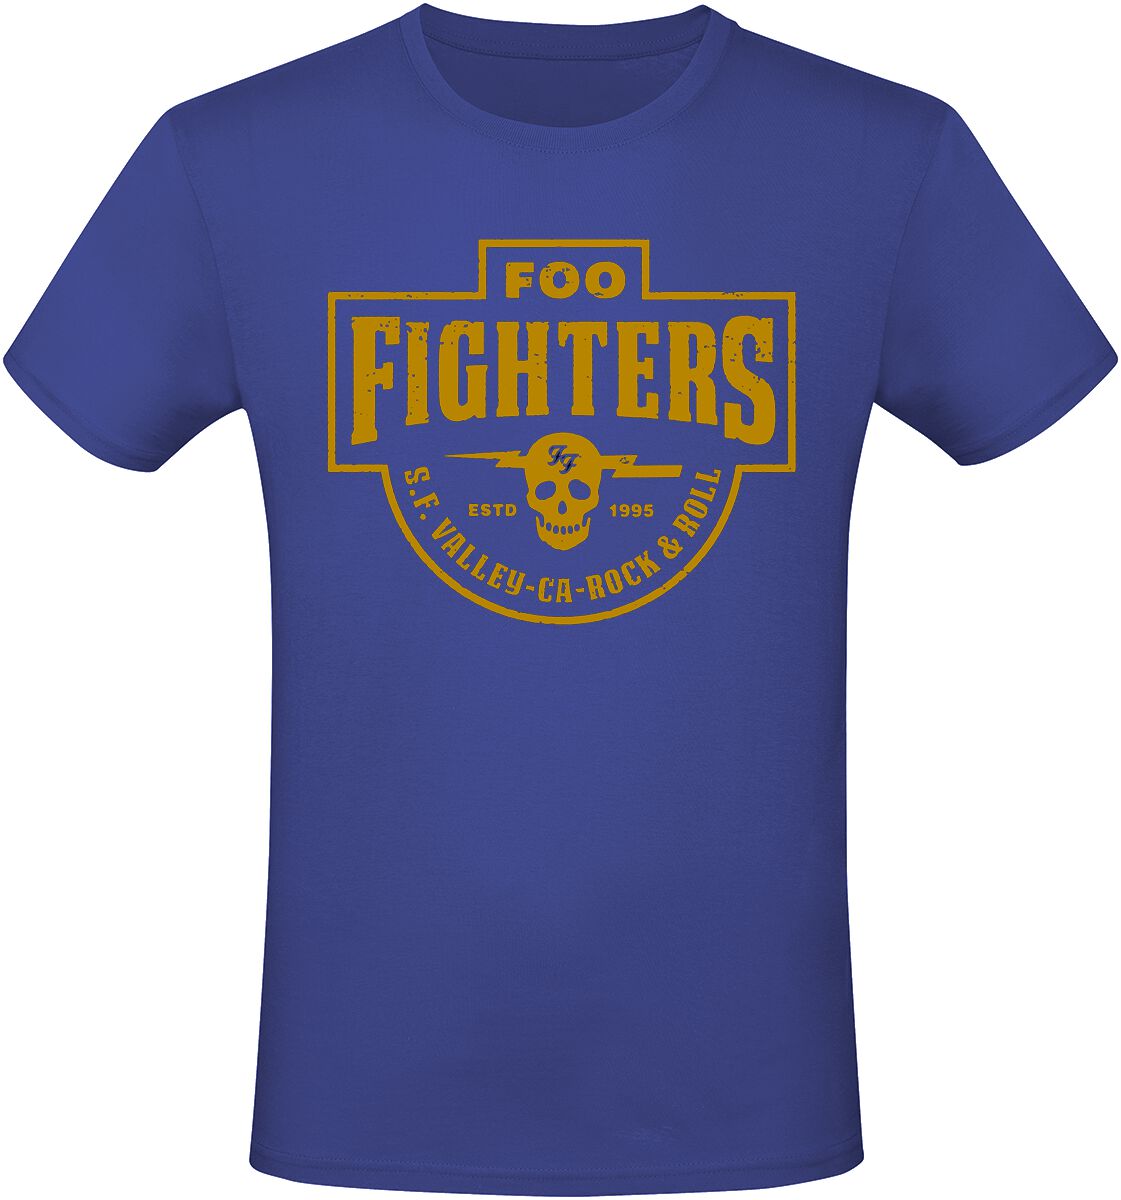 Foo Fighters T-Shirt - Estd 1995 - S - für Männer - Größe S - blau  - Lizenziertes Merchandise!